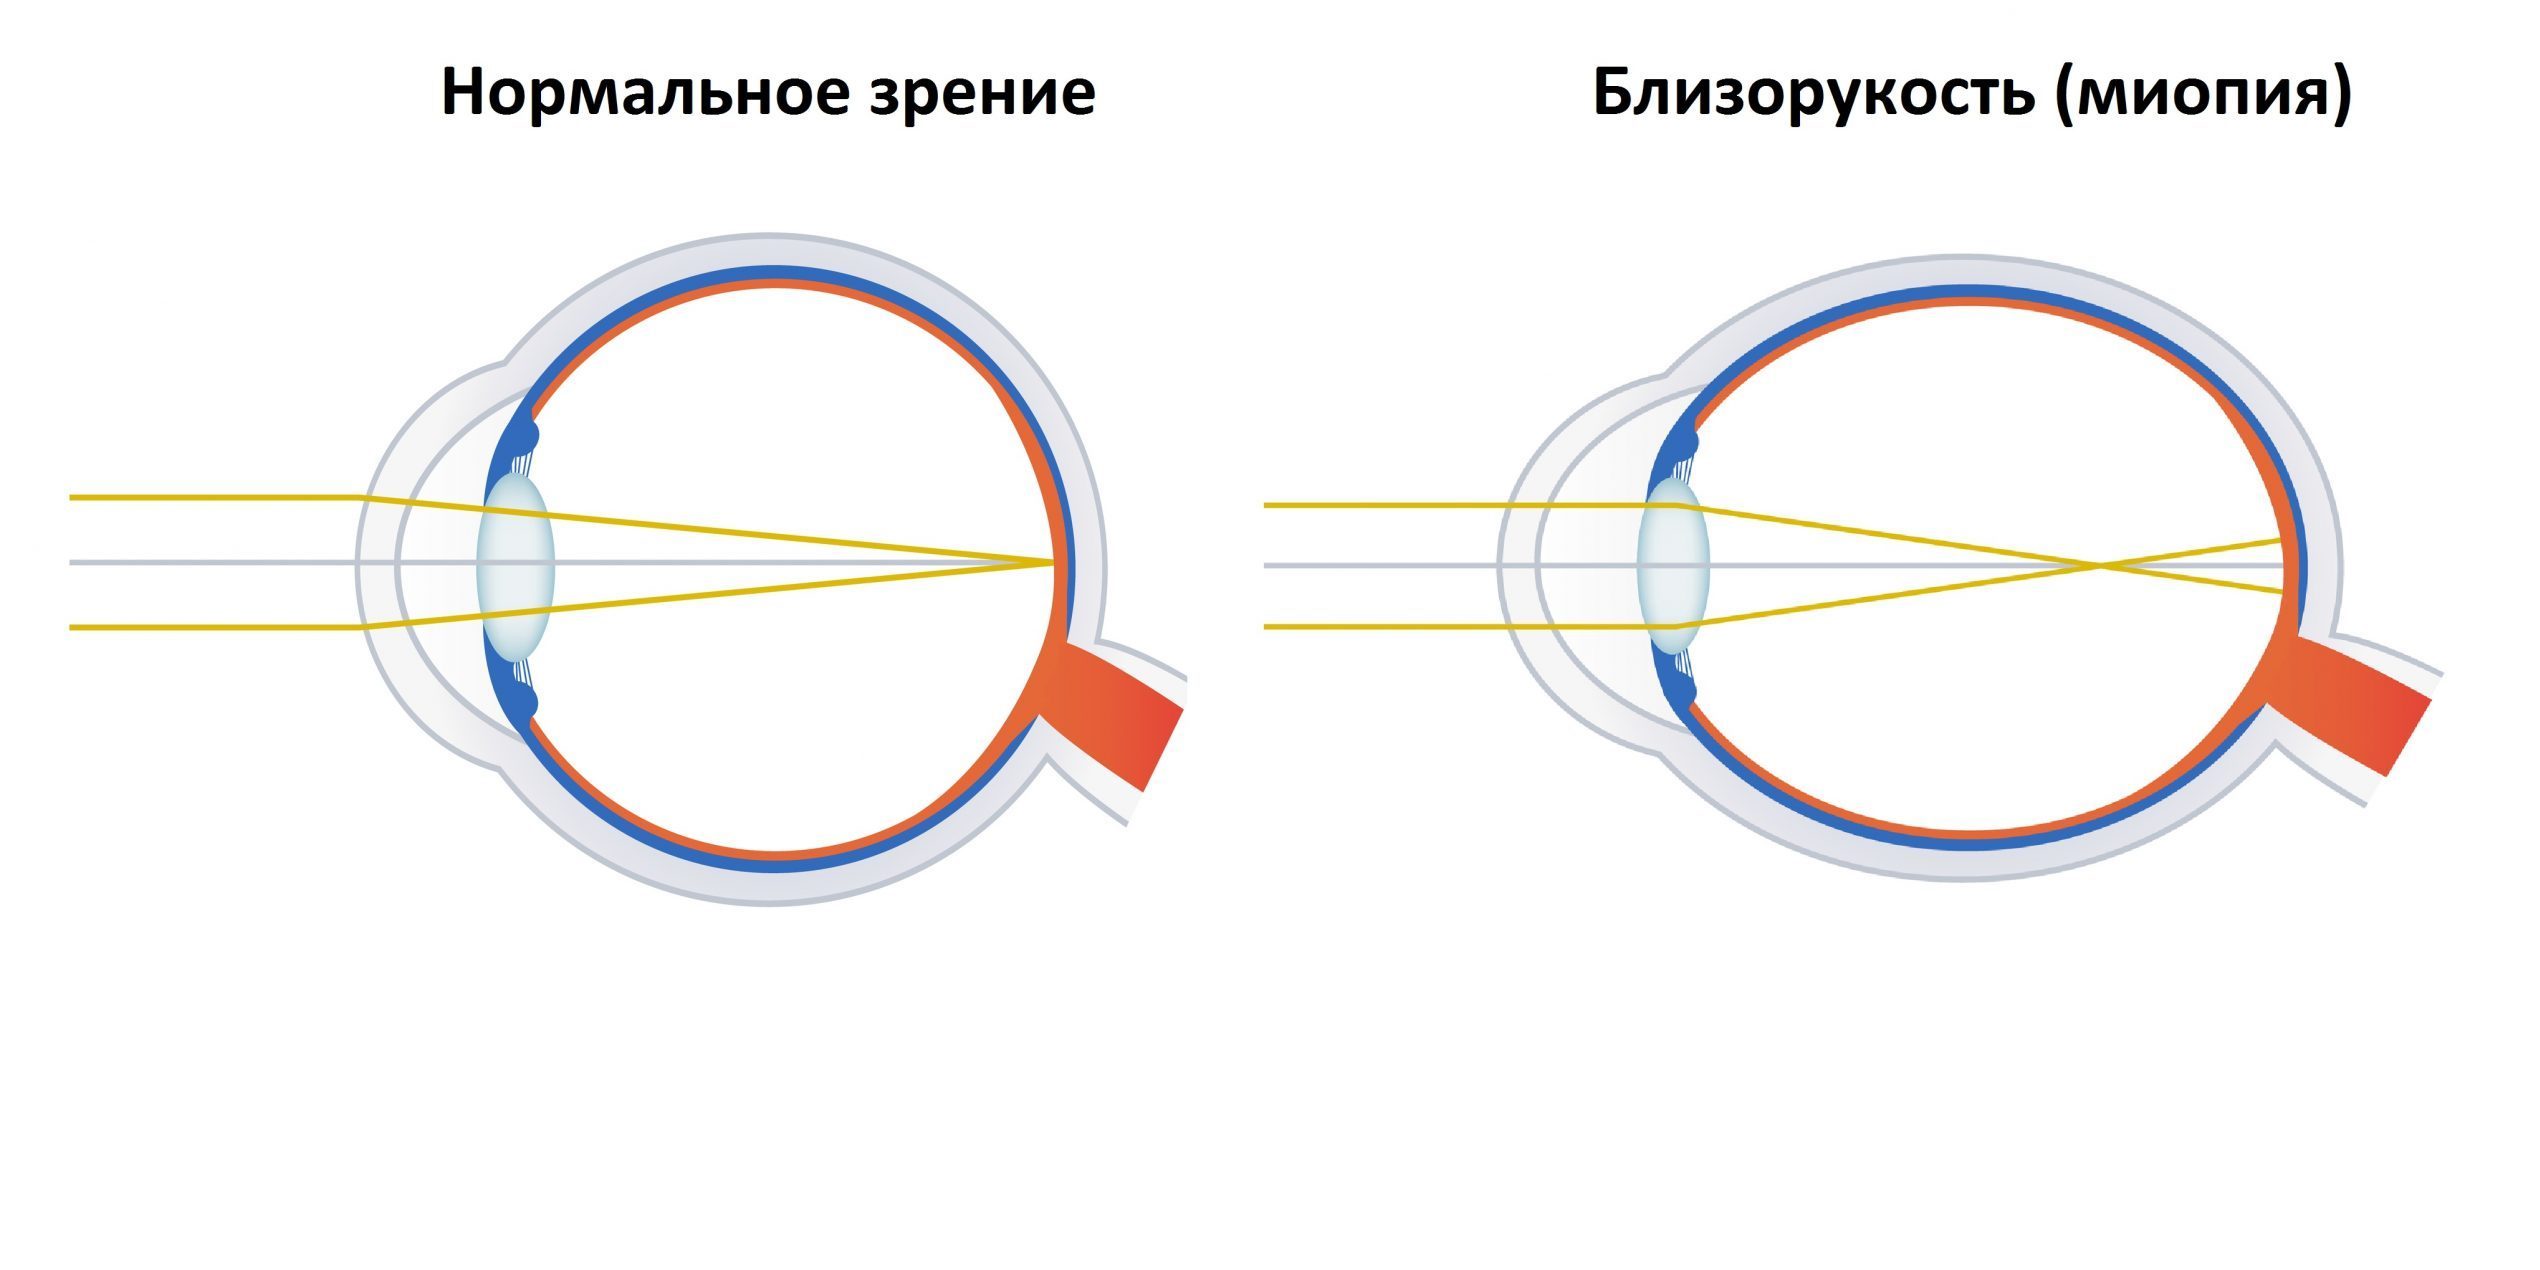 Фокусировка глаза человека. Осевая и рефракционная миопия. Близорукость миопия. Зрение при близорукости. Близорукий и дальнозоркий глаз.